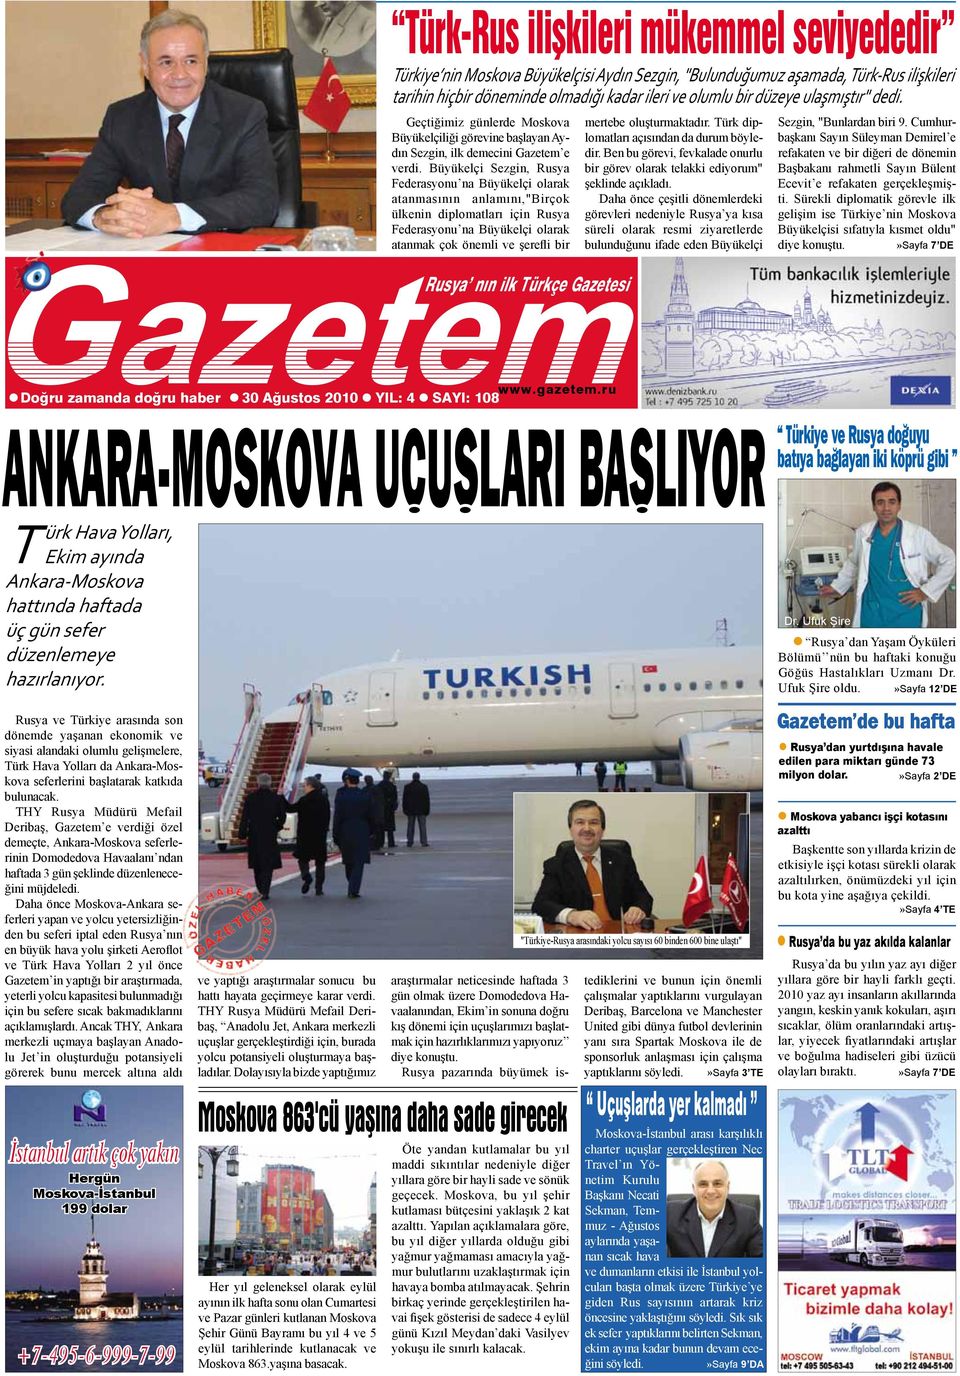 Rusya ve Türkiye arasında son dönemde yaşanan ekonomik ve siyasi alandaki olumlu gelişmelere, Türk Hava Yolları da Ankara-Moskova seferlerini başlatarak katkıda bulunacak.